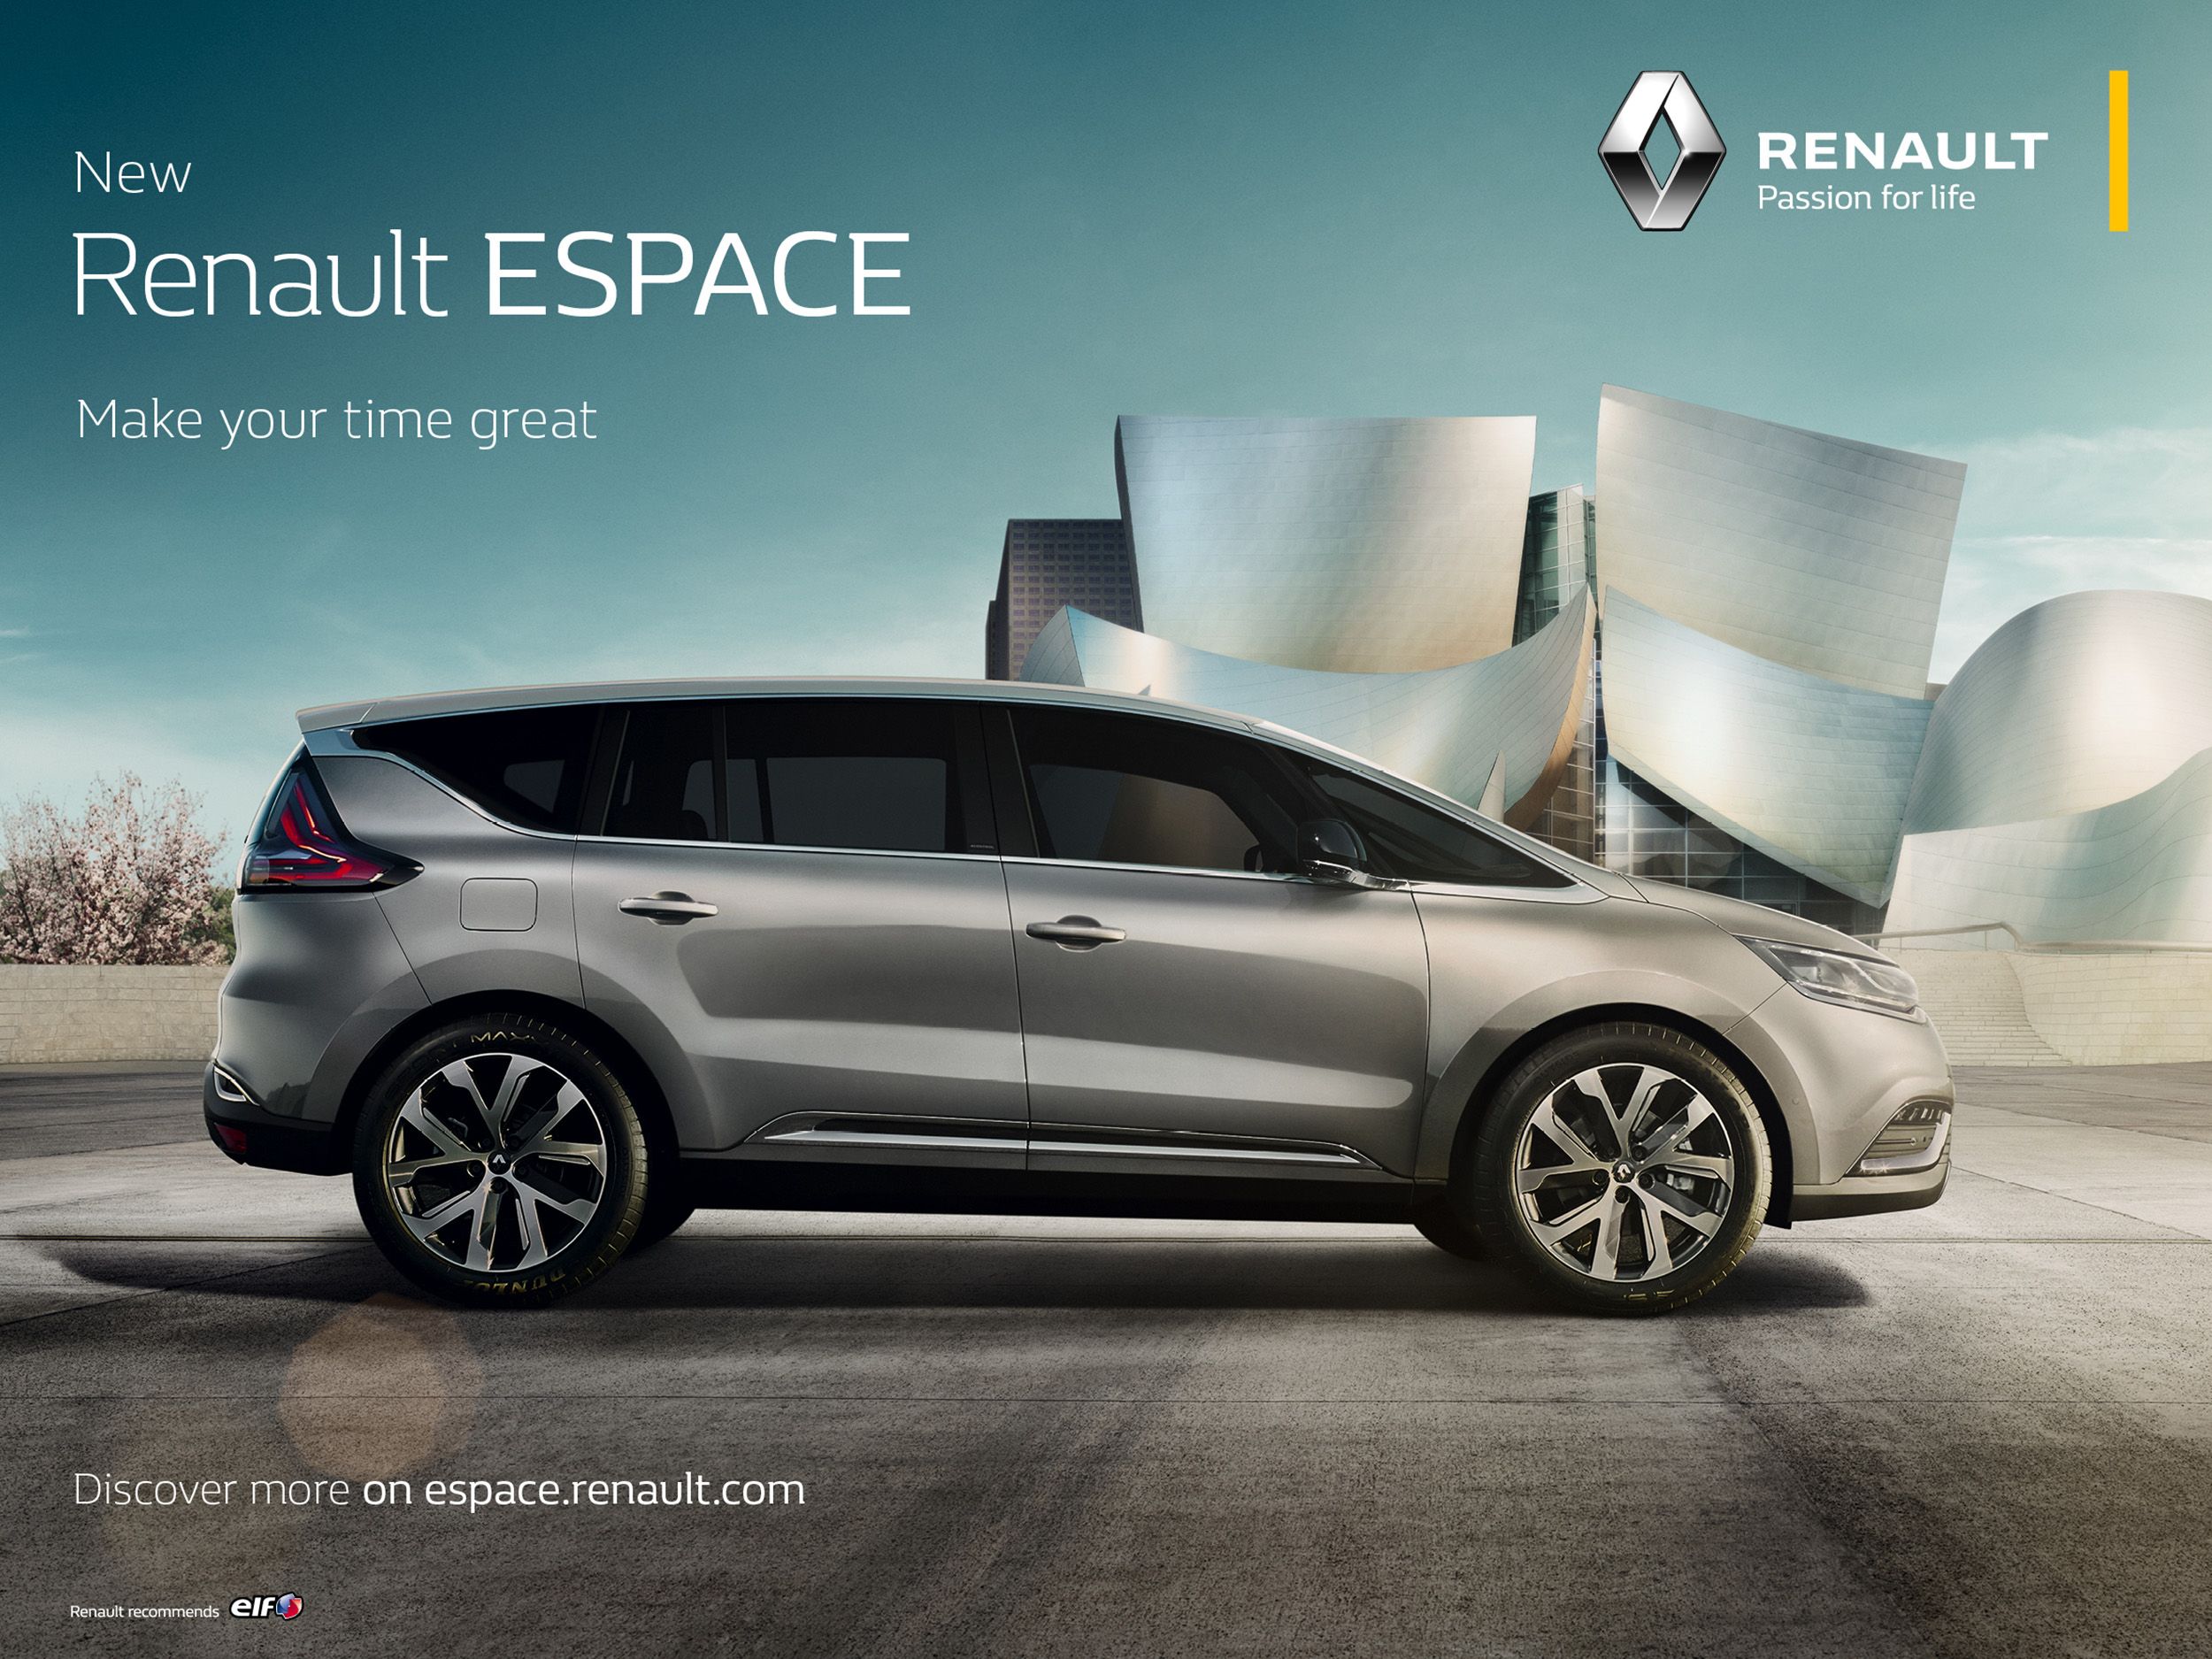 La nueva firma de Renault se llama «Passion for life» y se estrena este mes